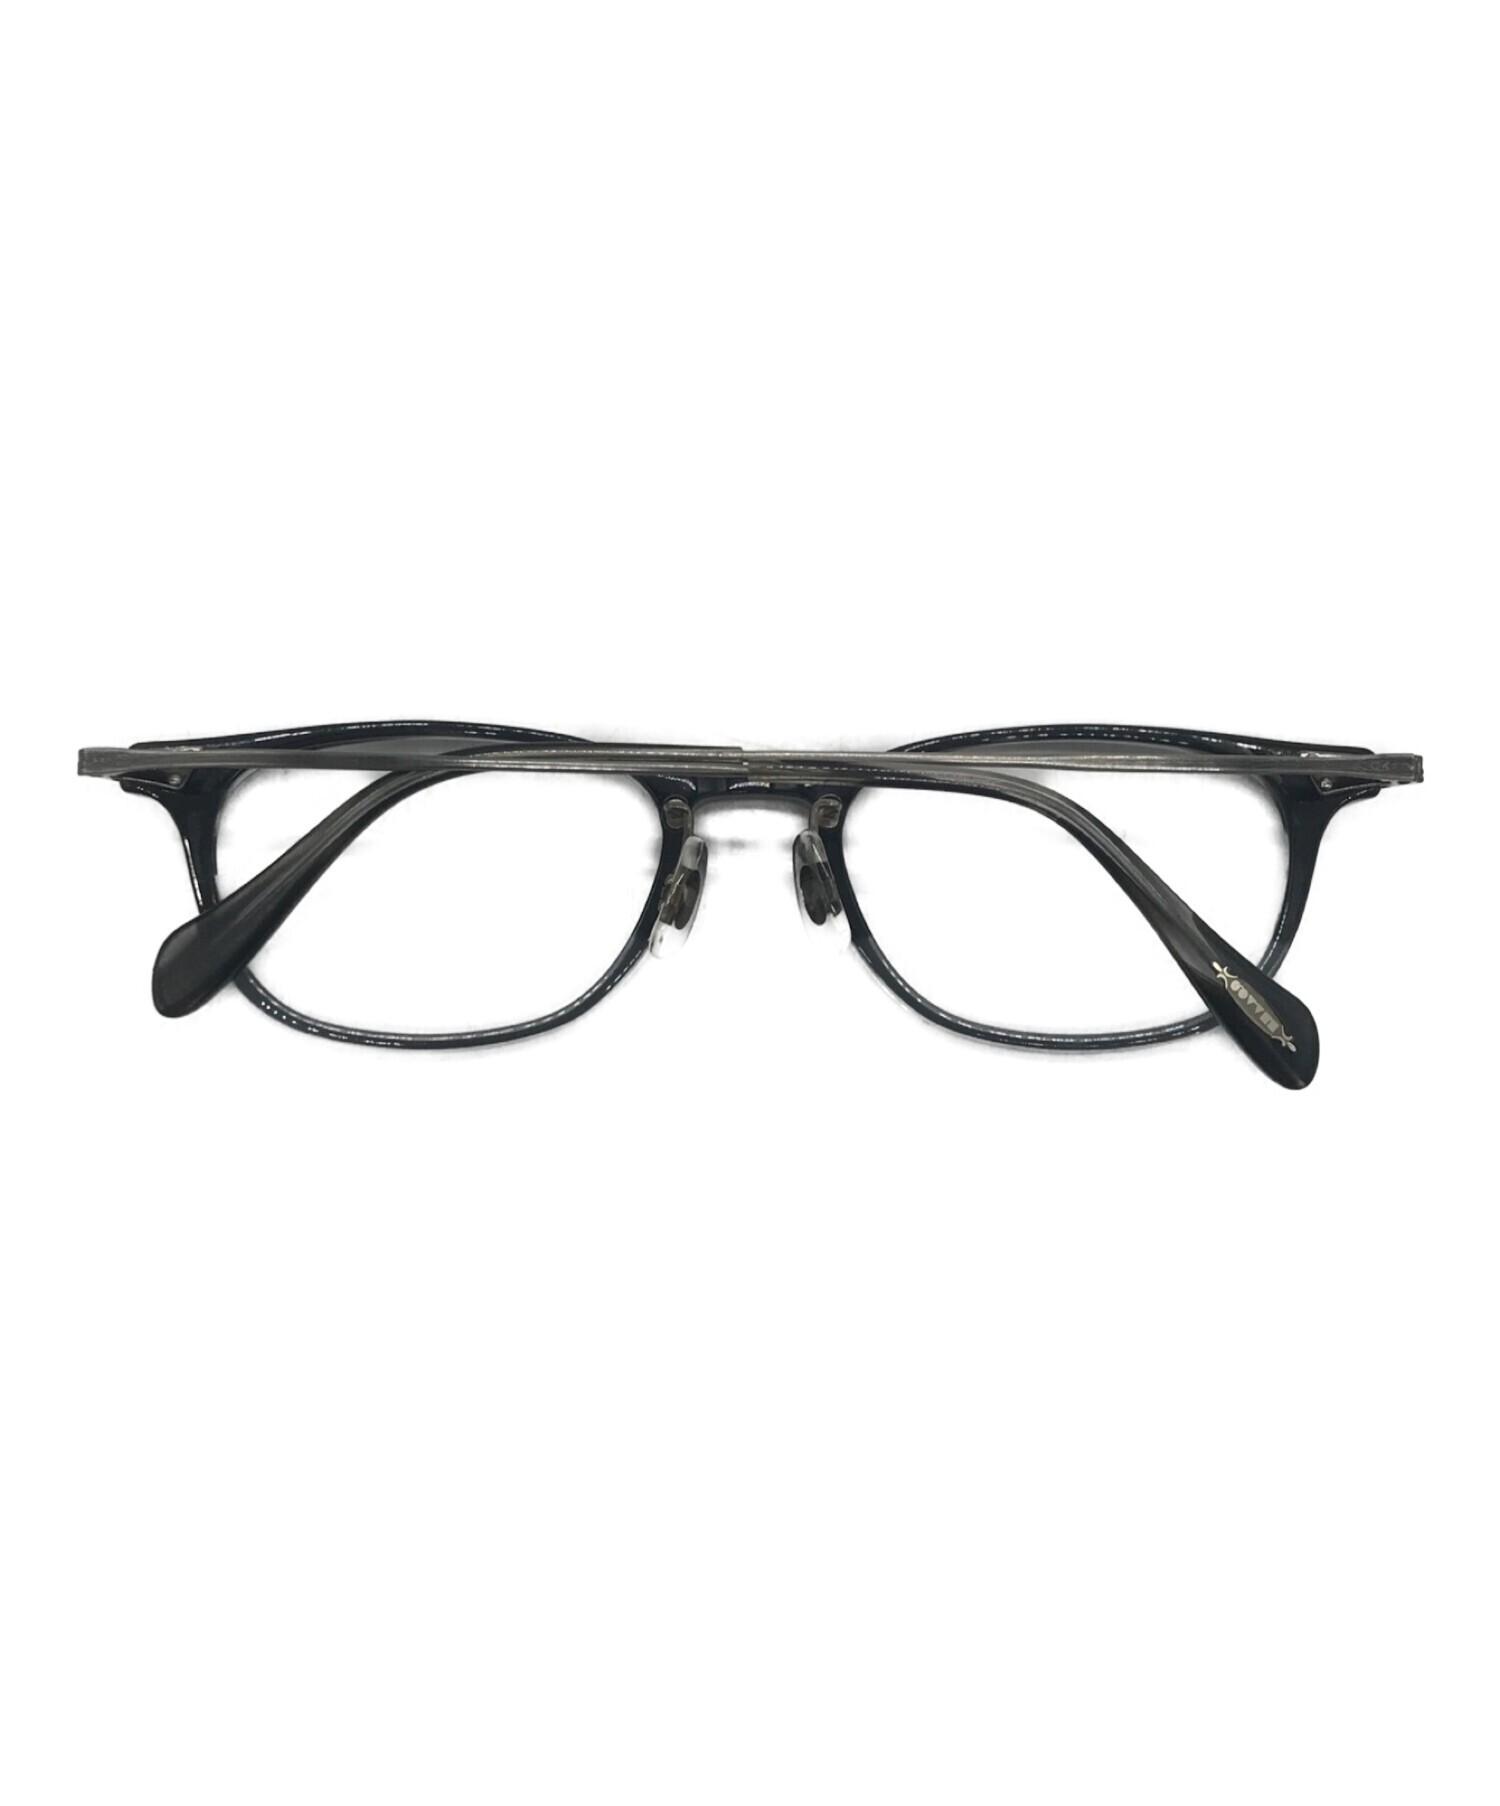 【店舗用品】OLIVER PEOPLES オリバーピープルズ JACNO メガネ 眼鏡 小物